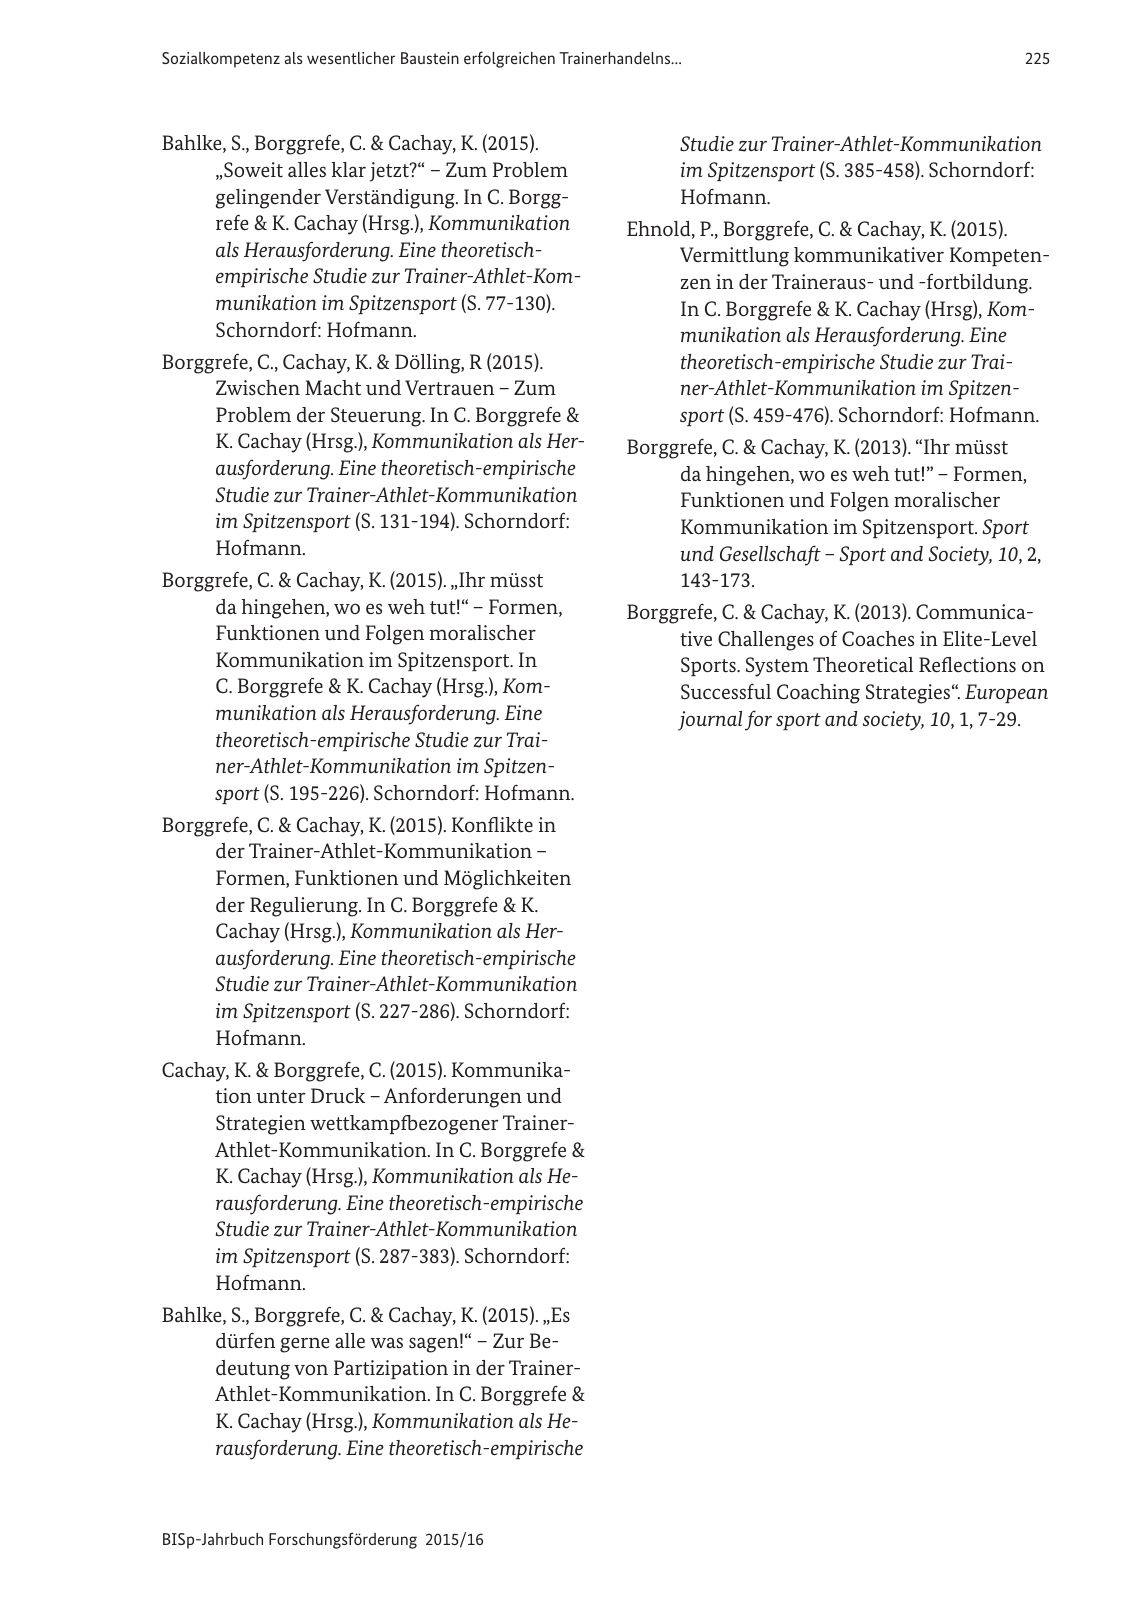 Vorschau BISp-Jahrbuch Forschungsförderung 2015/16 Seite 227